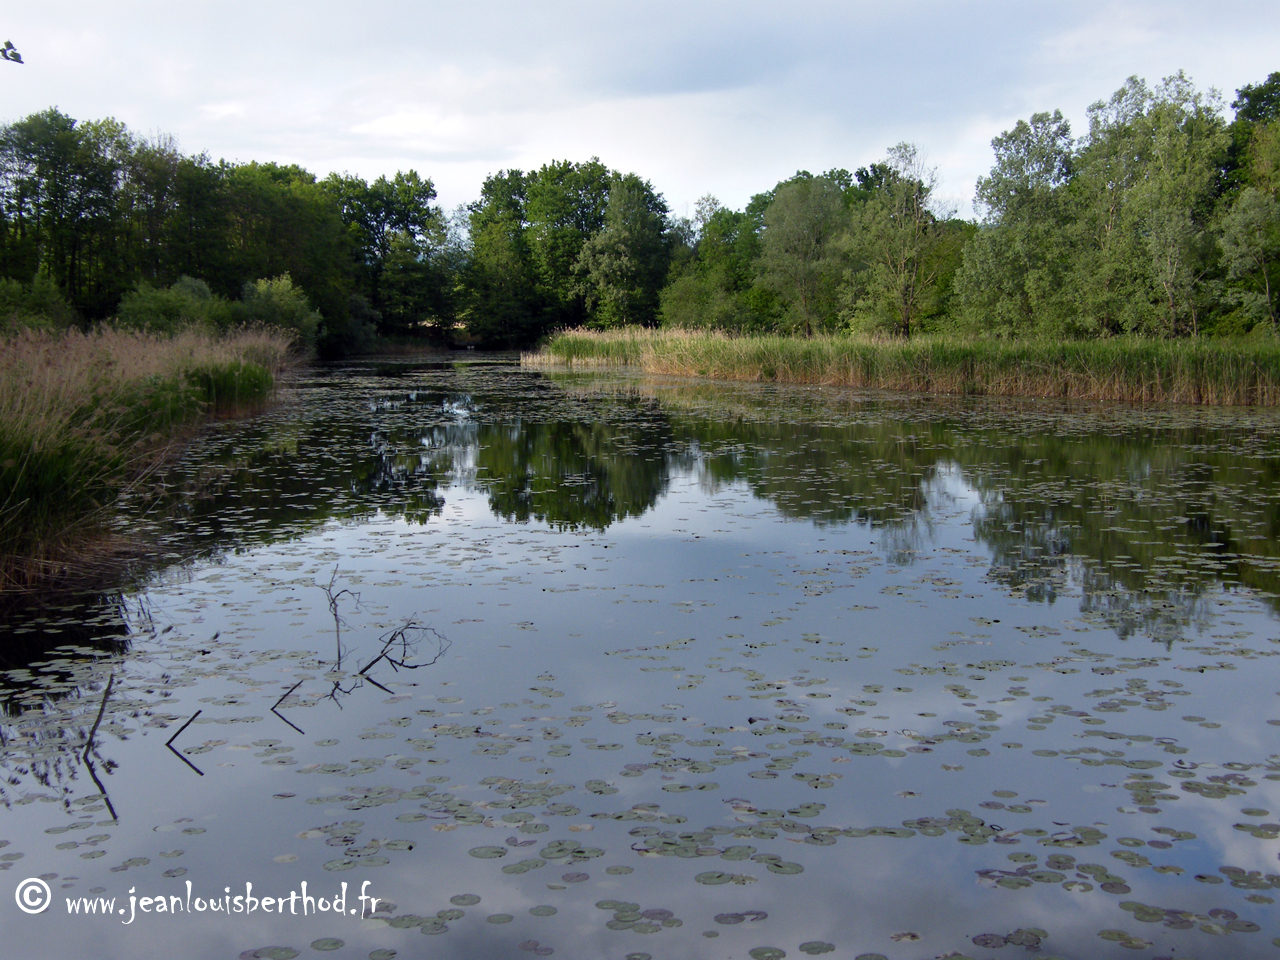 The Pond of Crosagny6